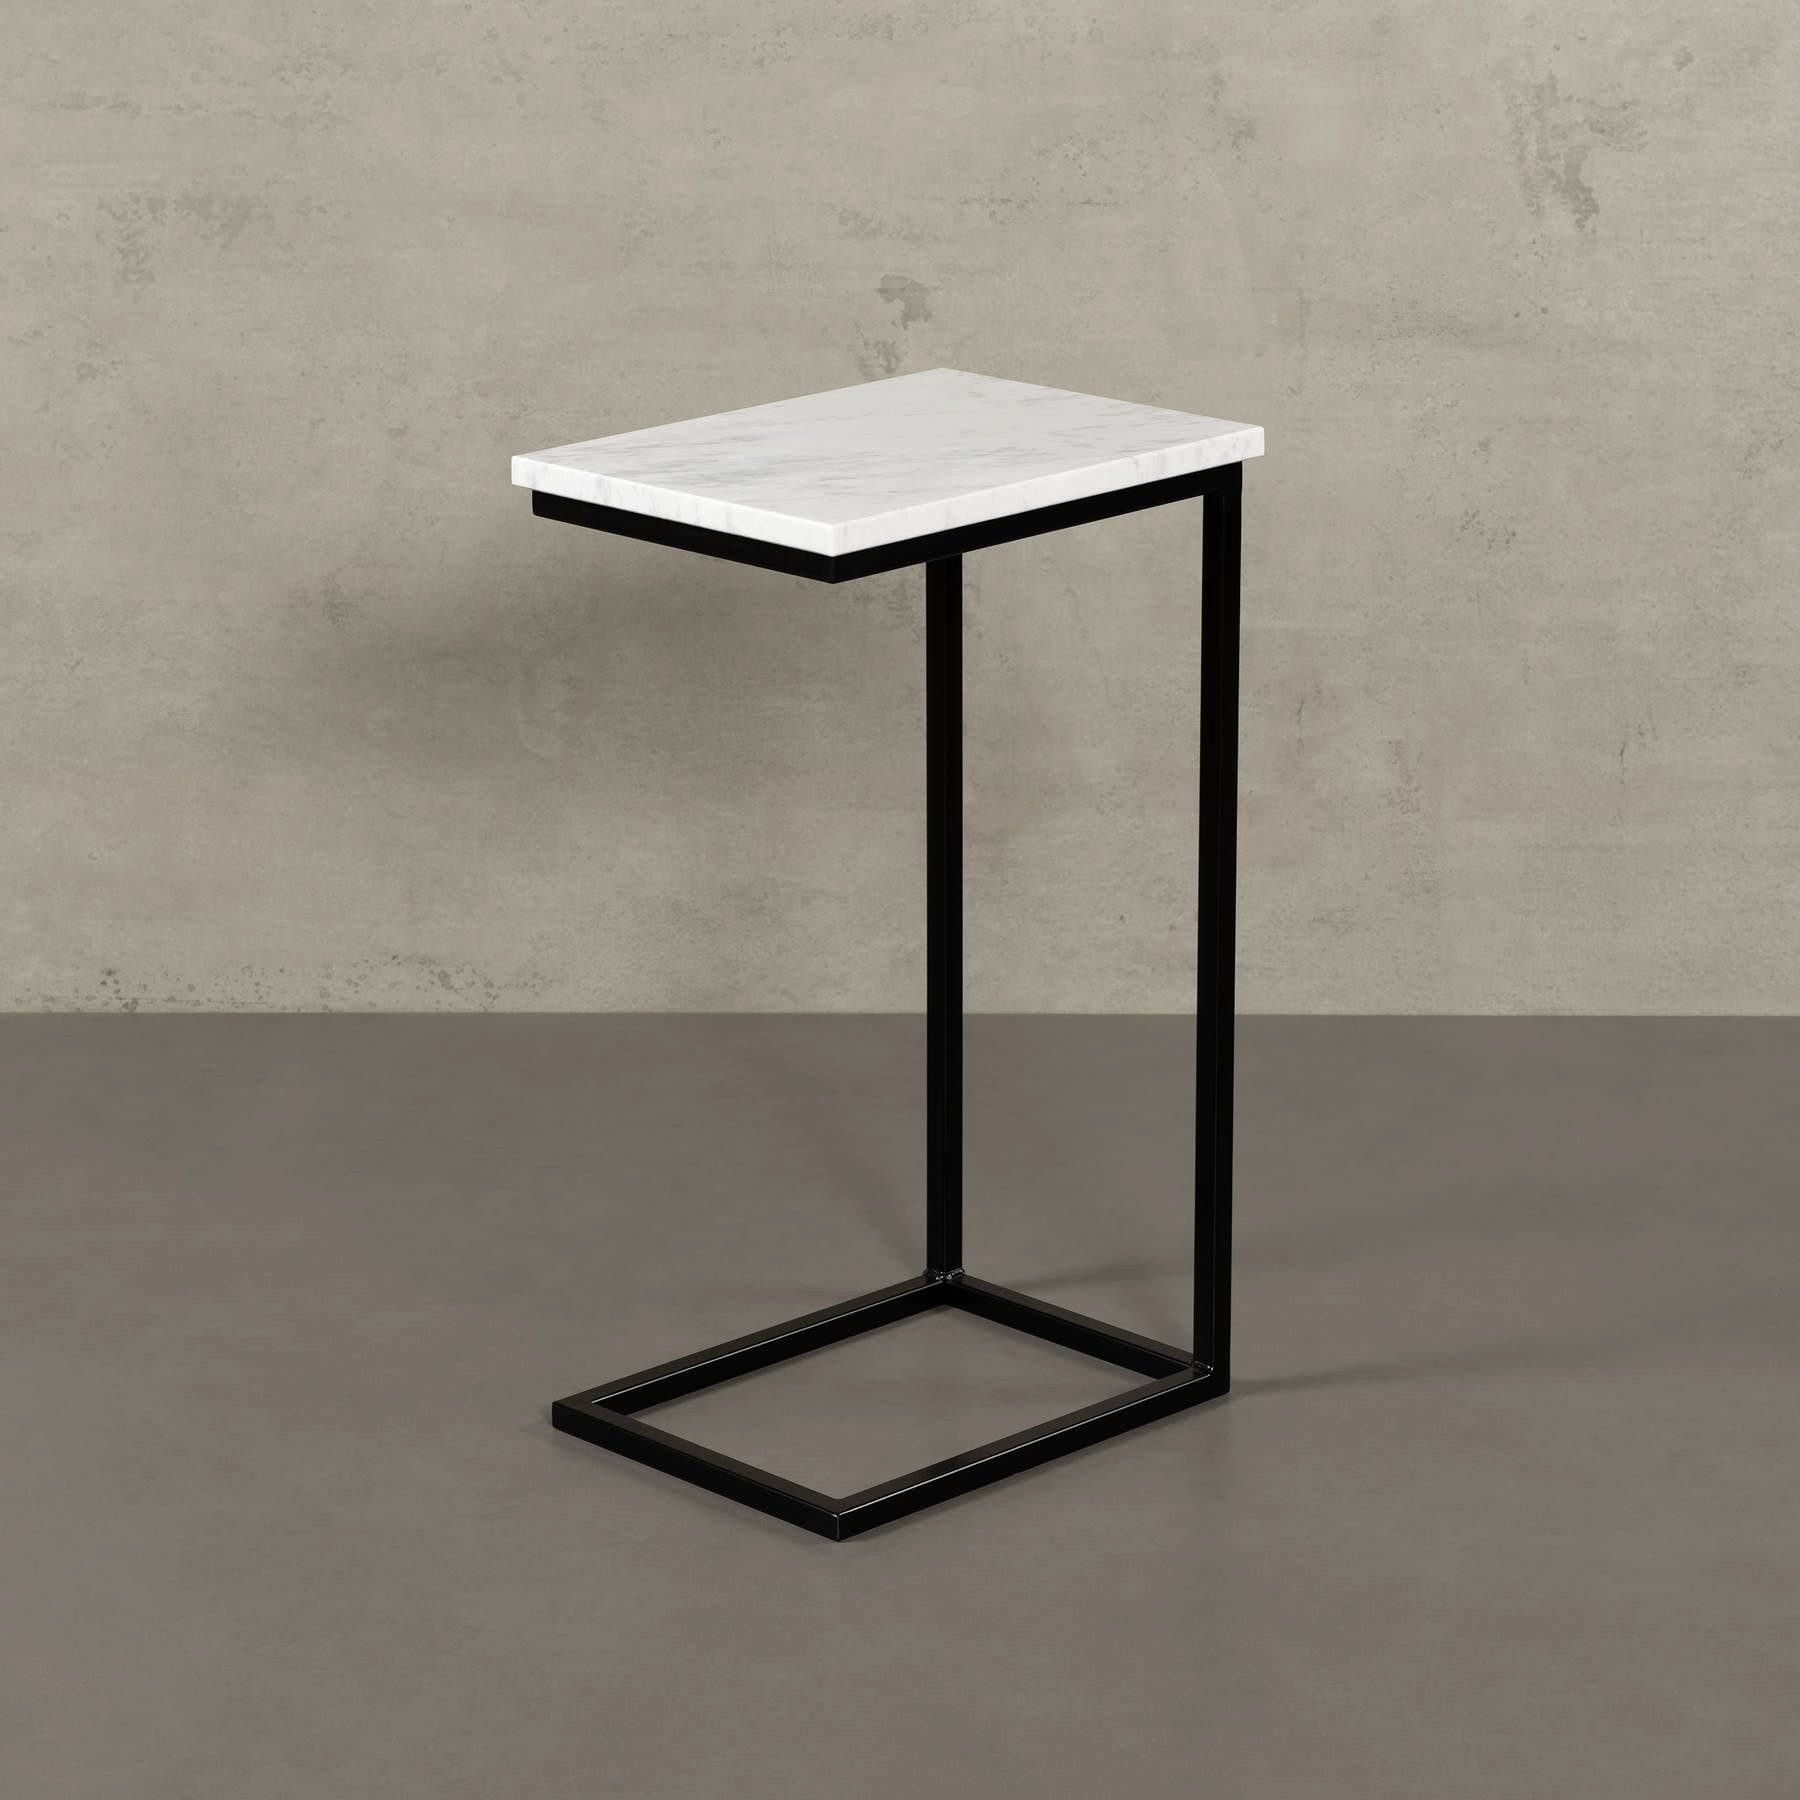 MAGNA Atelier Couchtisch STOCKHOLM mit ECHTEM MARMOR, Wohnzimmer Tisch eckig, Laptoptisch, schwarz Metallgestell, 40x30x68cm Olympus White